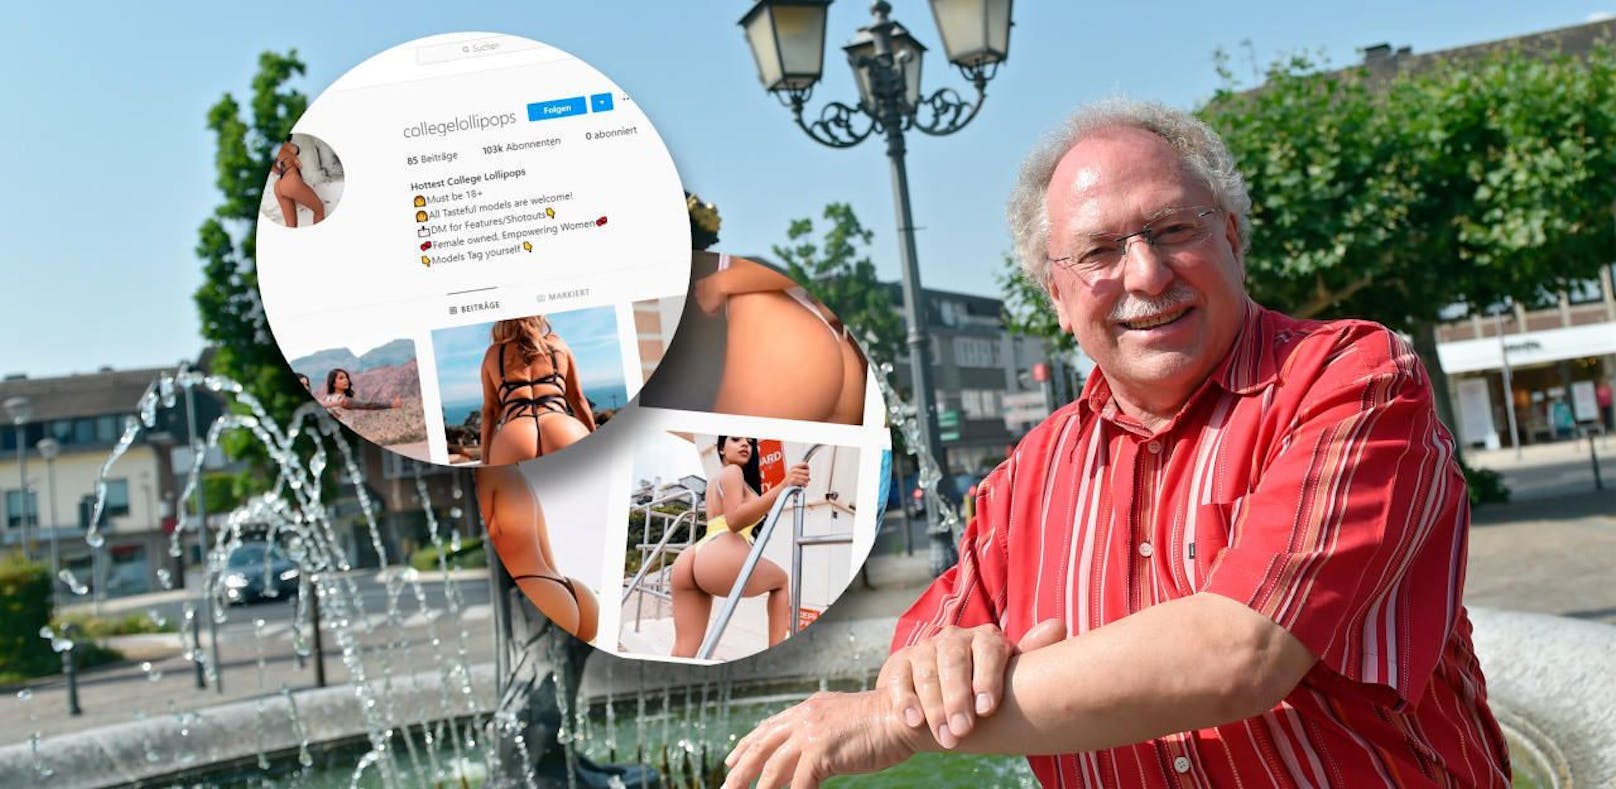 Der Bürgermeister von Geilenkirchen schämt sich nicht für seine Vorlieben.